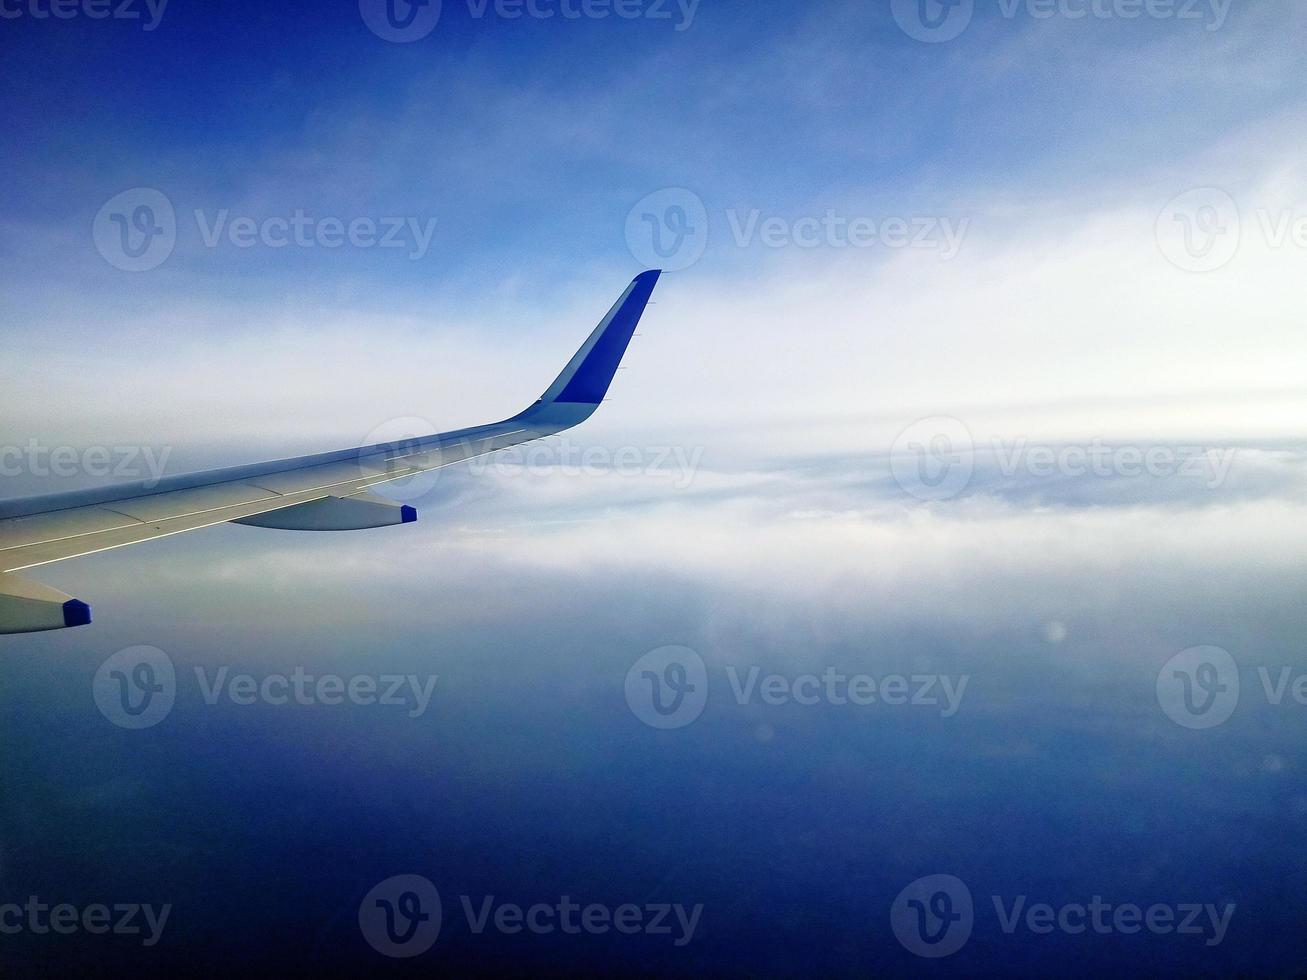 blå himmel från ett flygplan foto